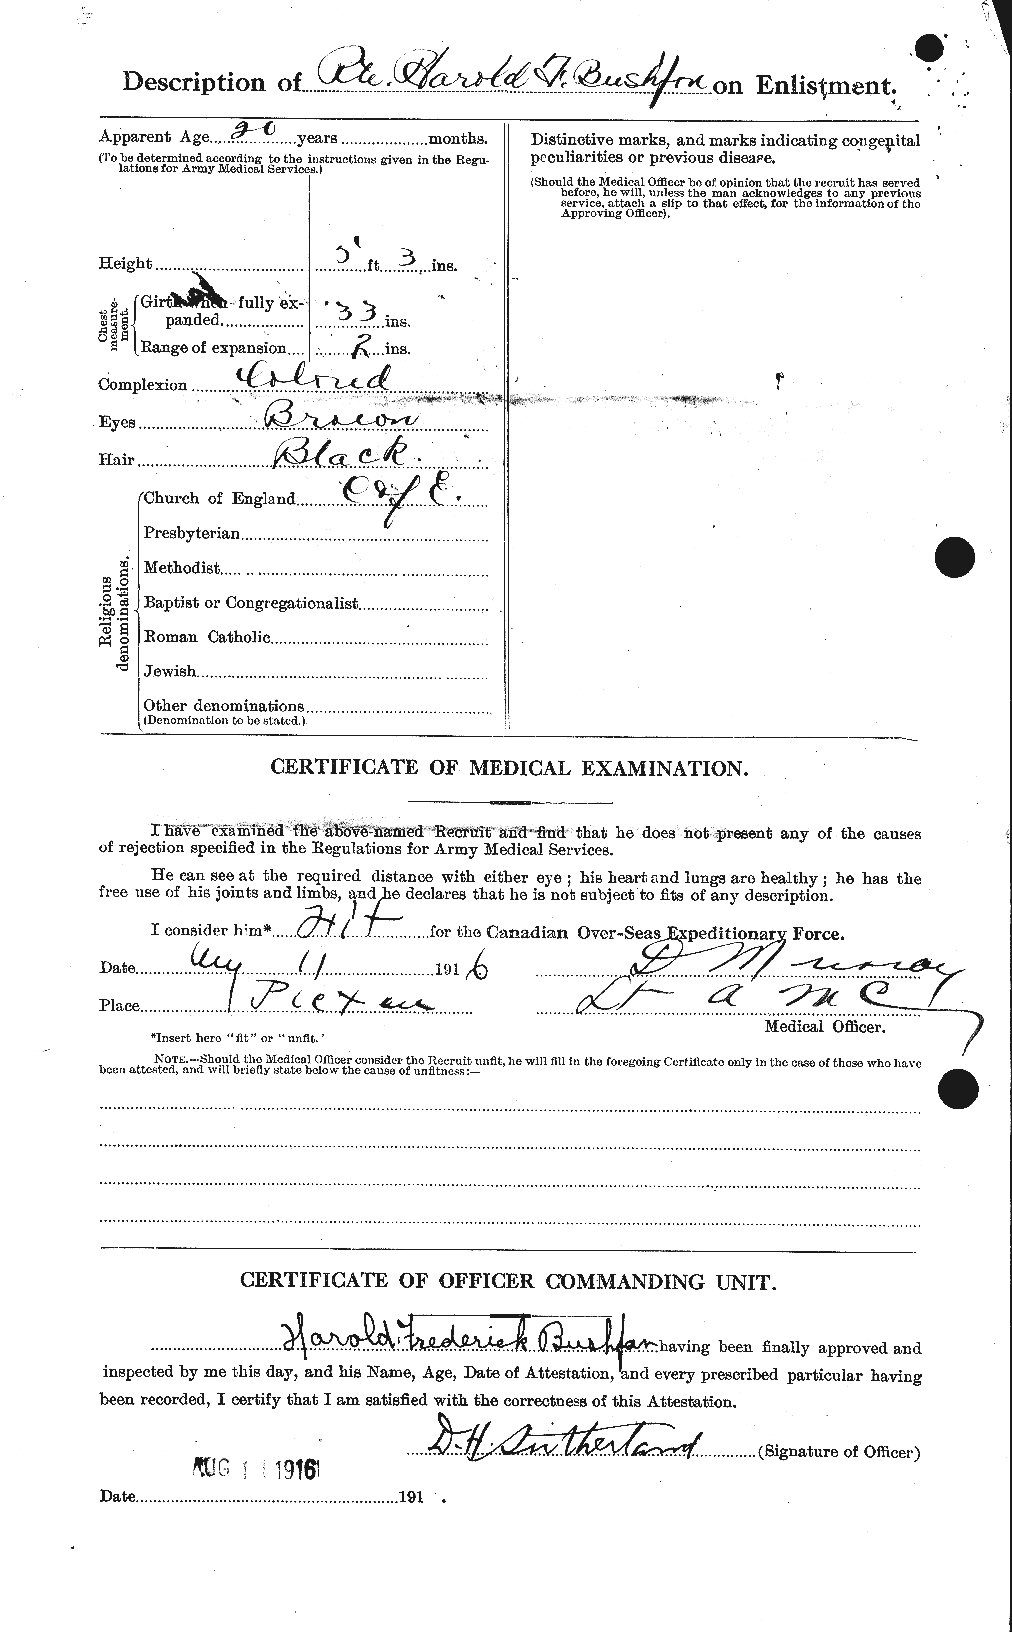 Dossiers du Personnel de la Première Guerre mondiale - CEC 274511b